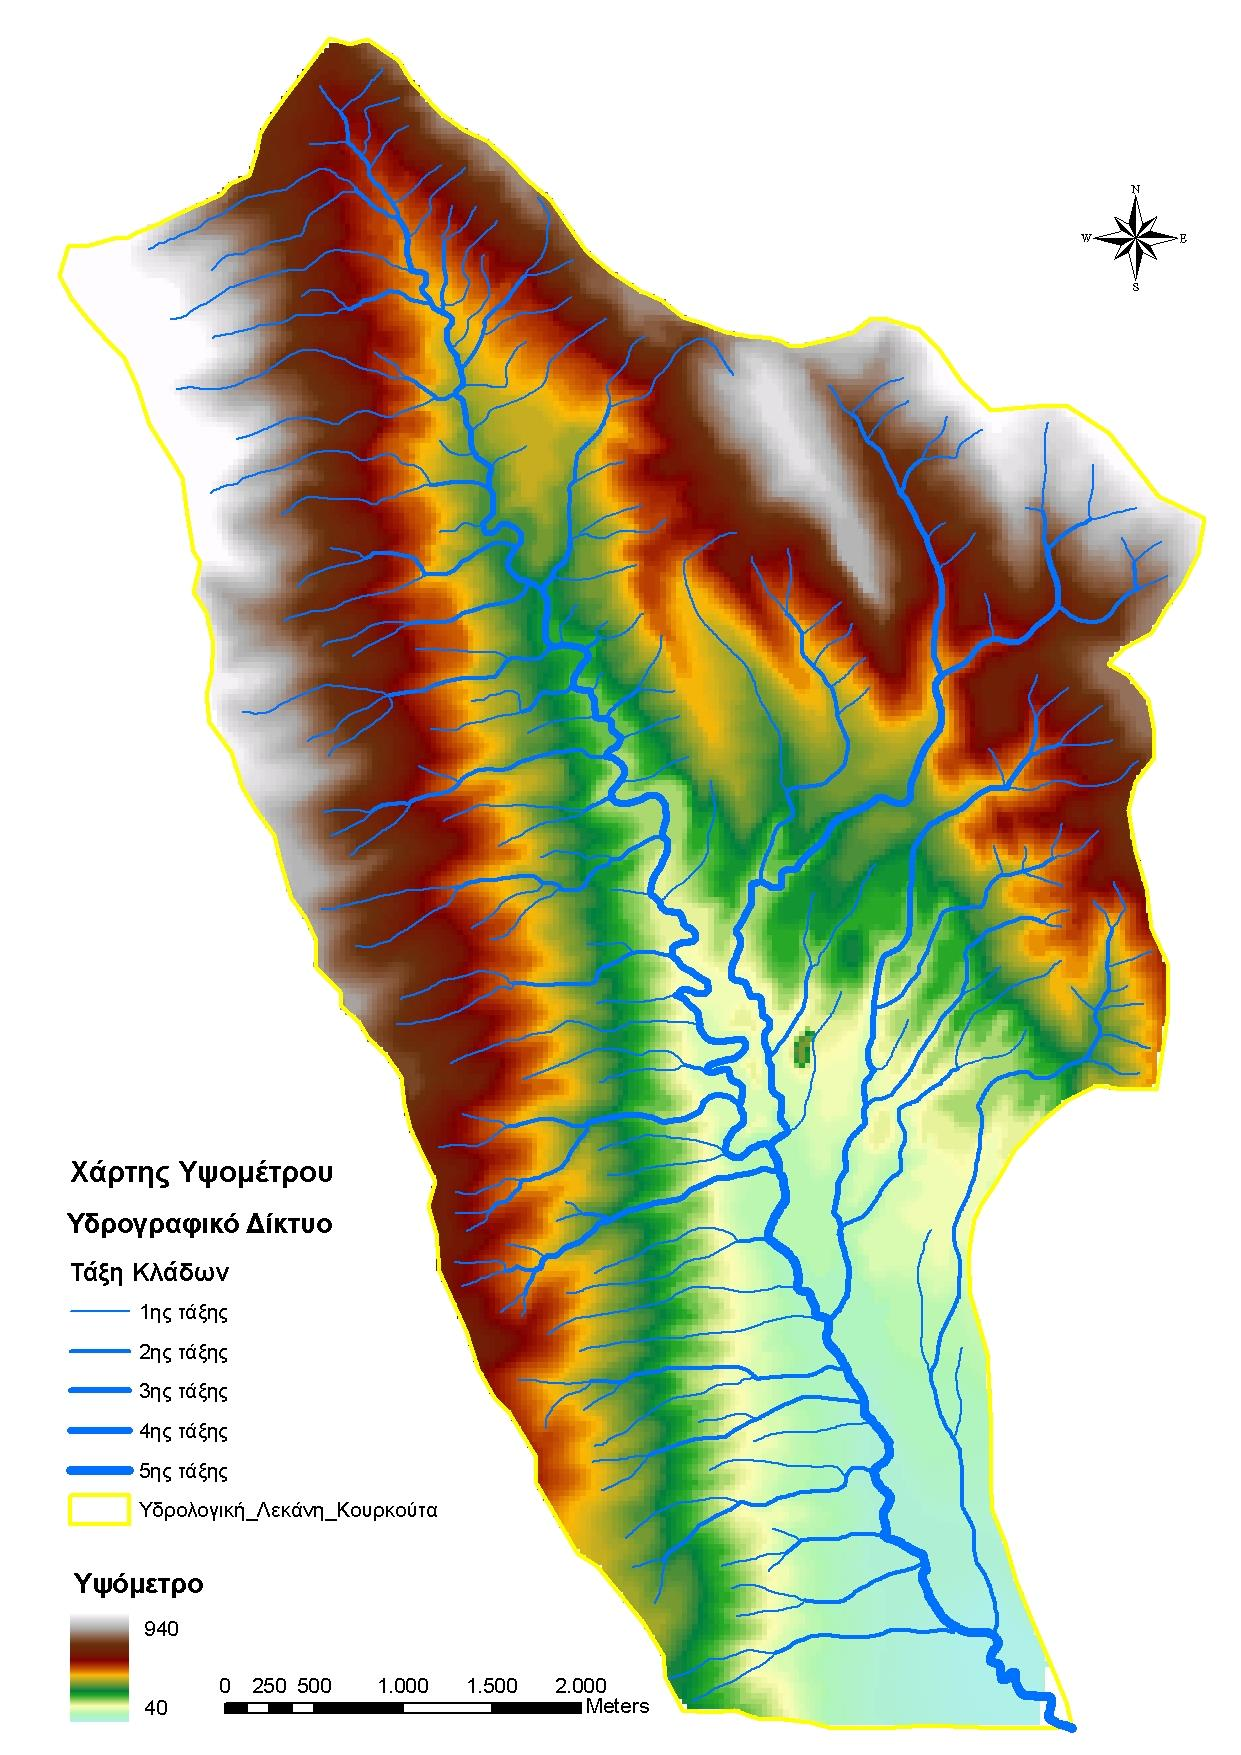 Χάρτης Ψηφιακού μοντέλου εδάφους της λεκάνης απορροής του